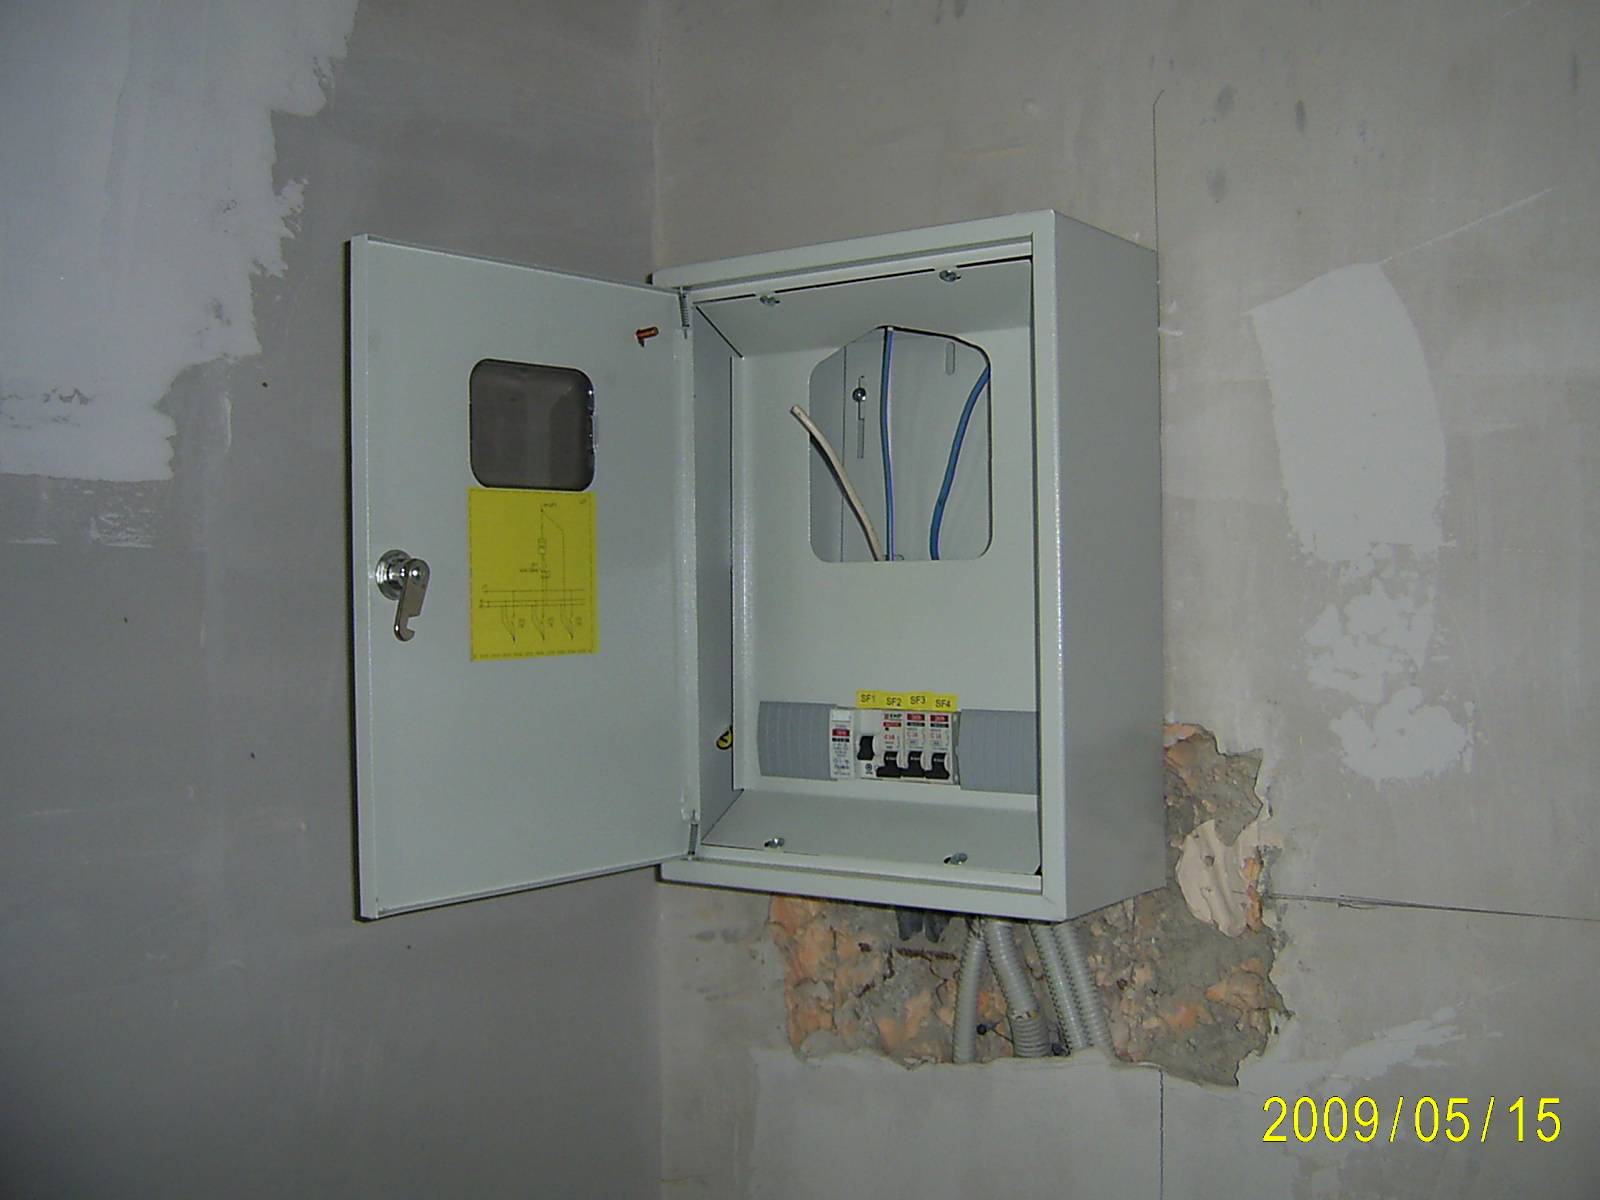 Как правильно подключить электросчетчик и автоматы? | enargys.ru | энергосбережение